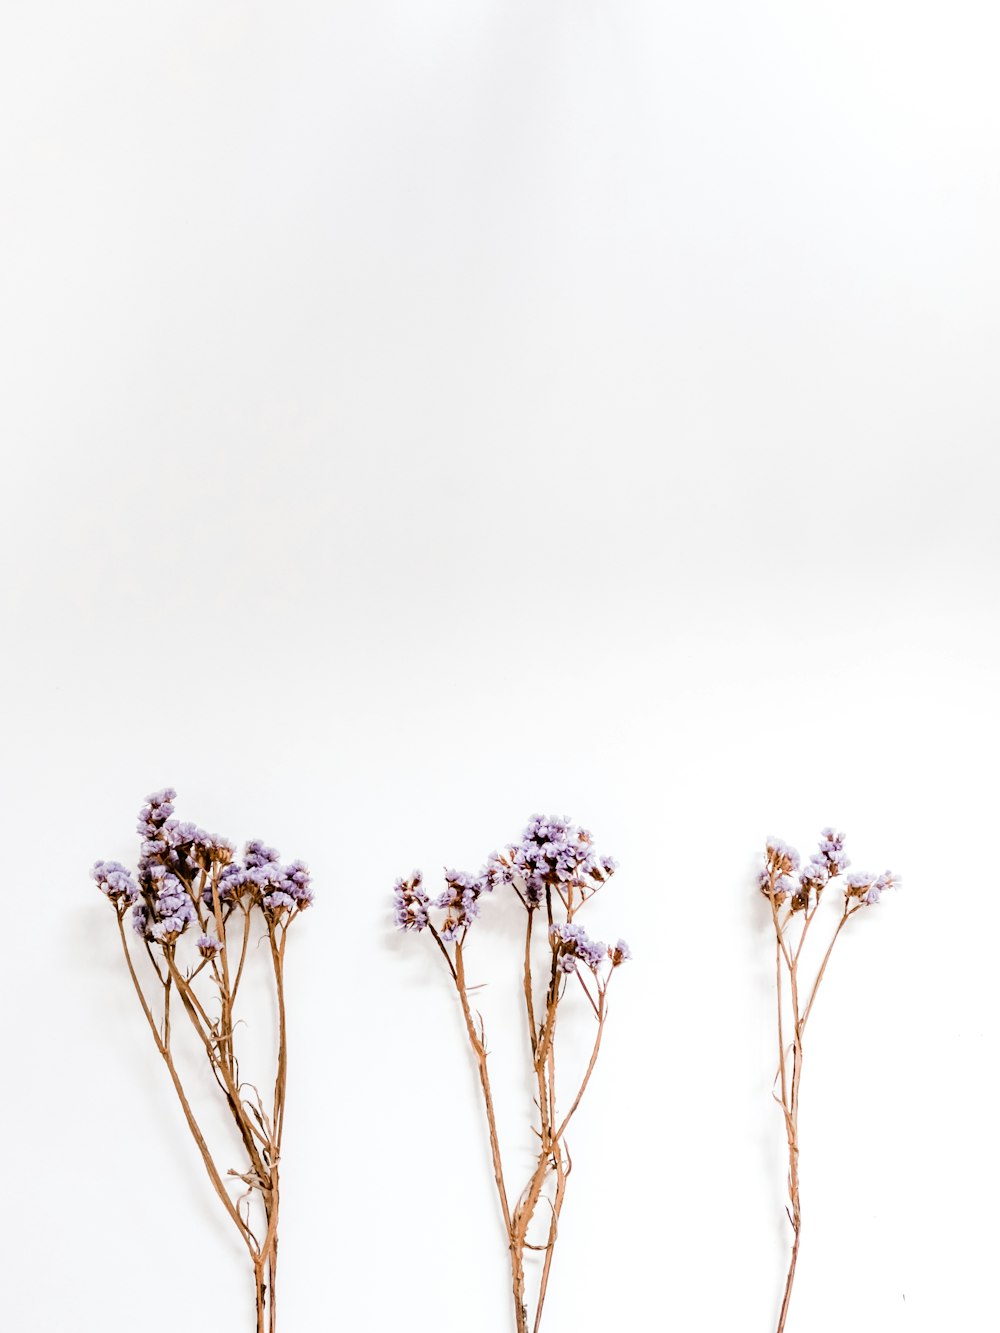 흰색 표면에 보라색 꽃잎이 달린 세 개의 꽃